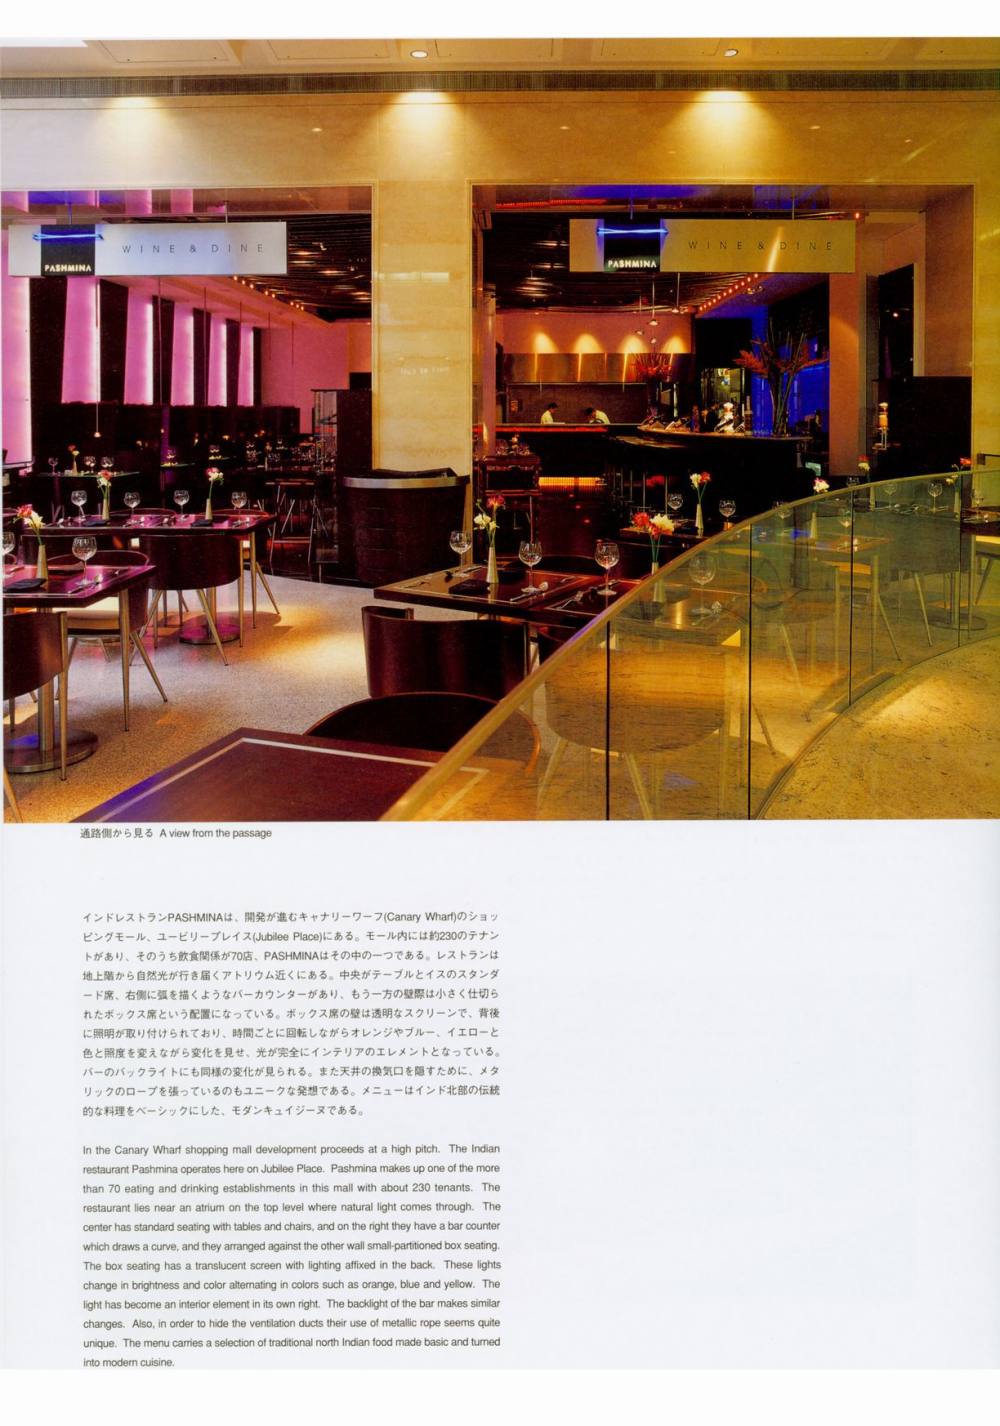 世界餐厅与酒吧设计精选3_038.jpg